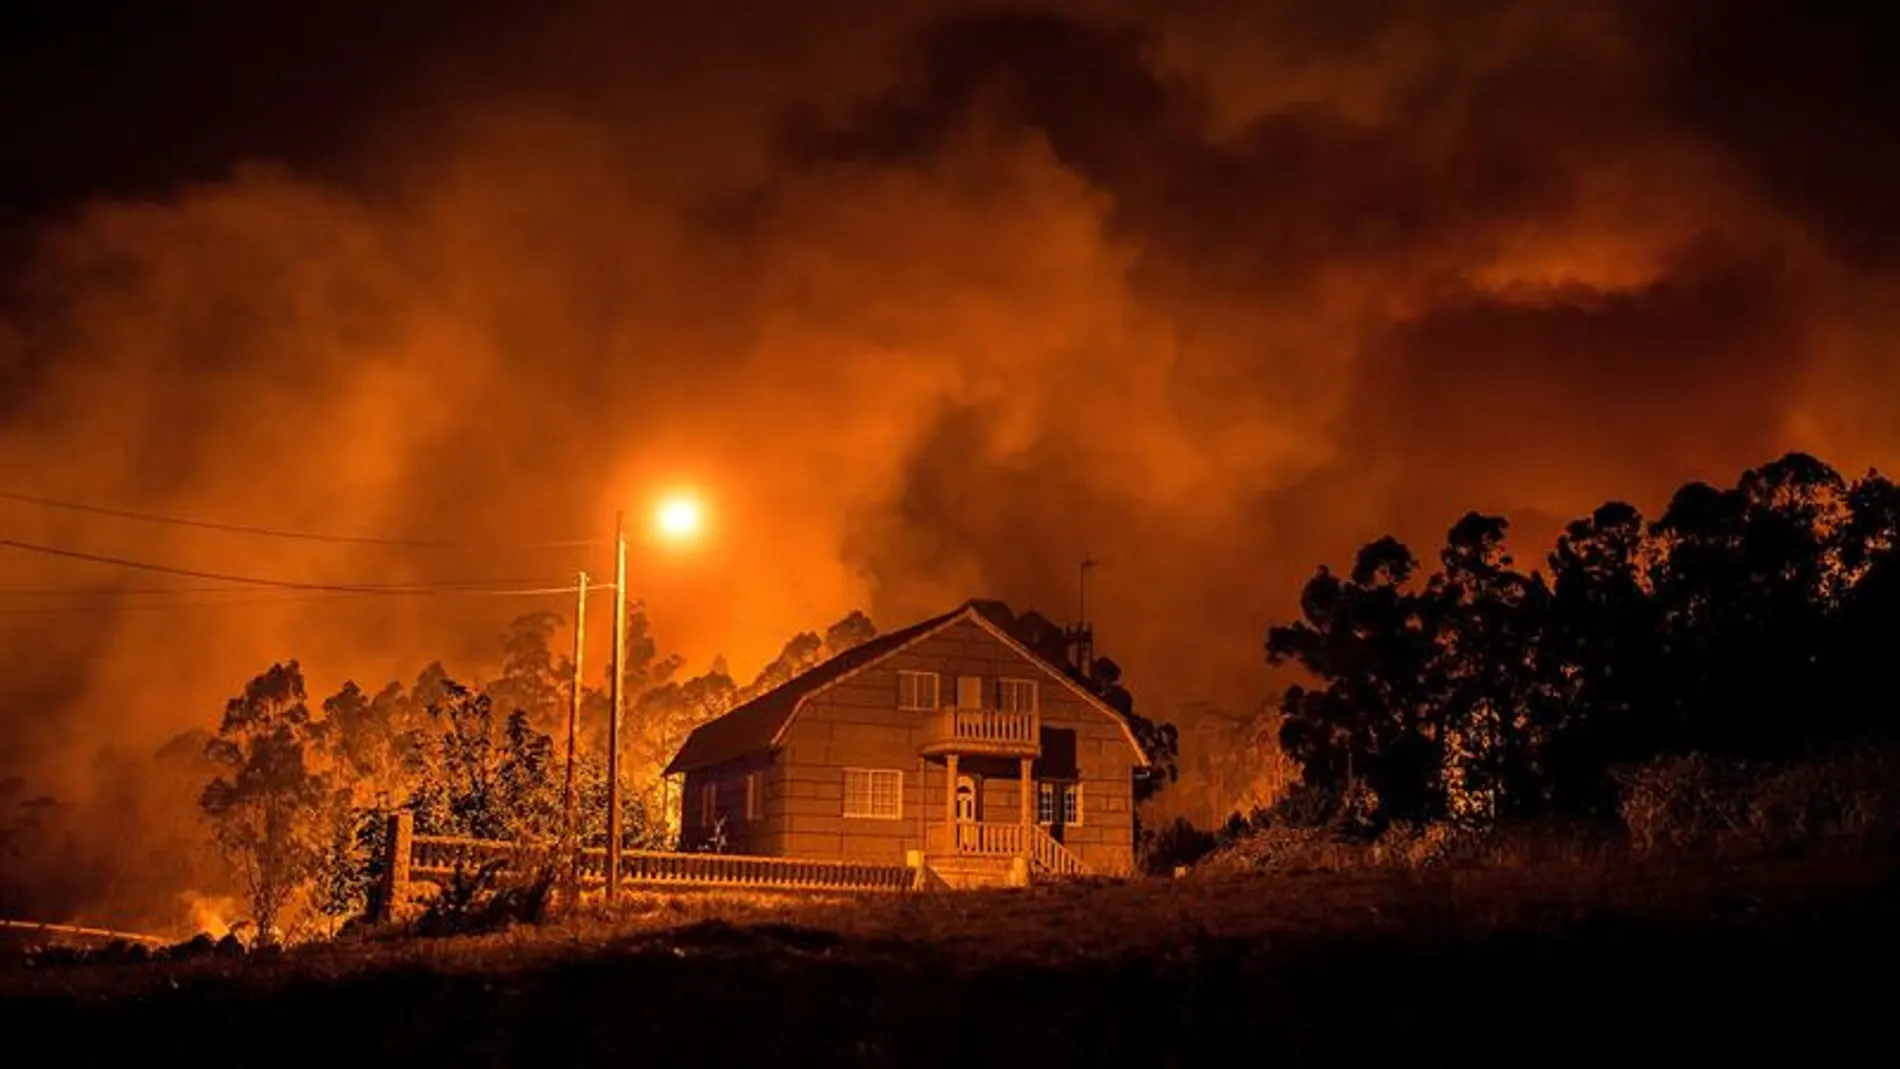 El fuego avanza hacia una de las casas de Nigrán